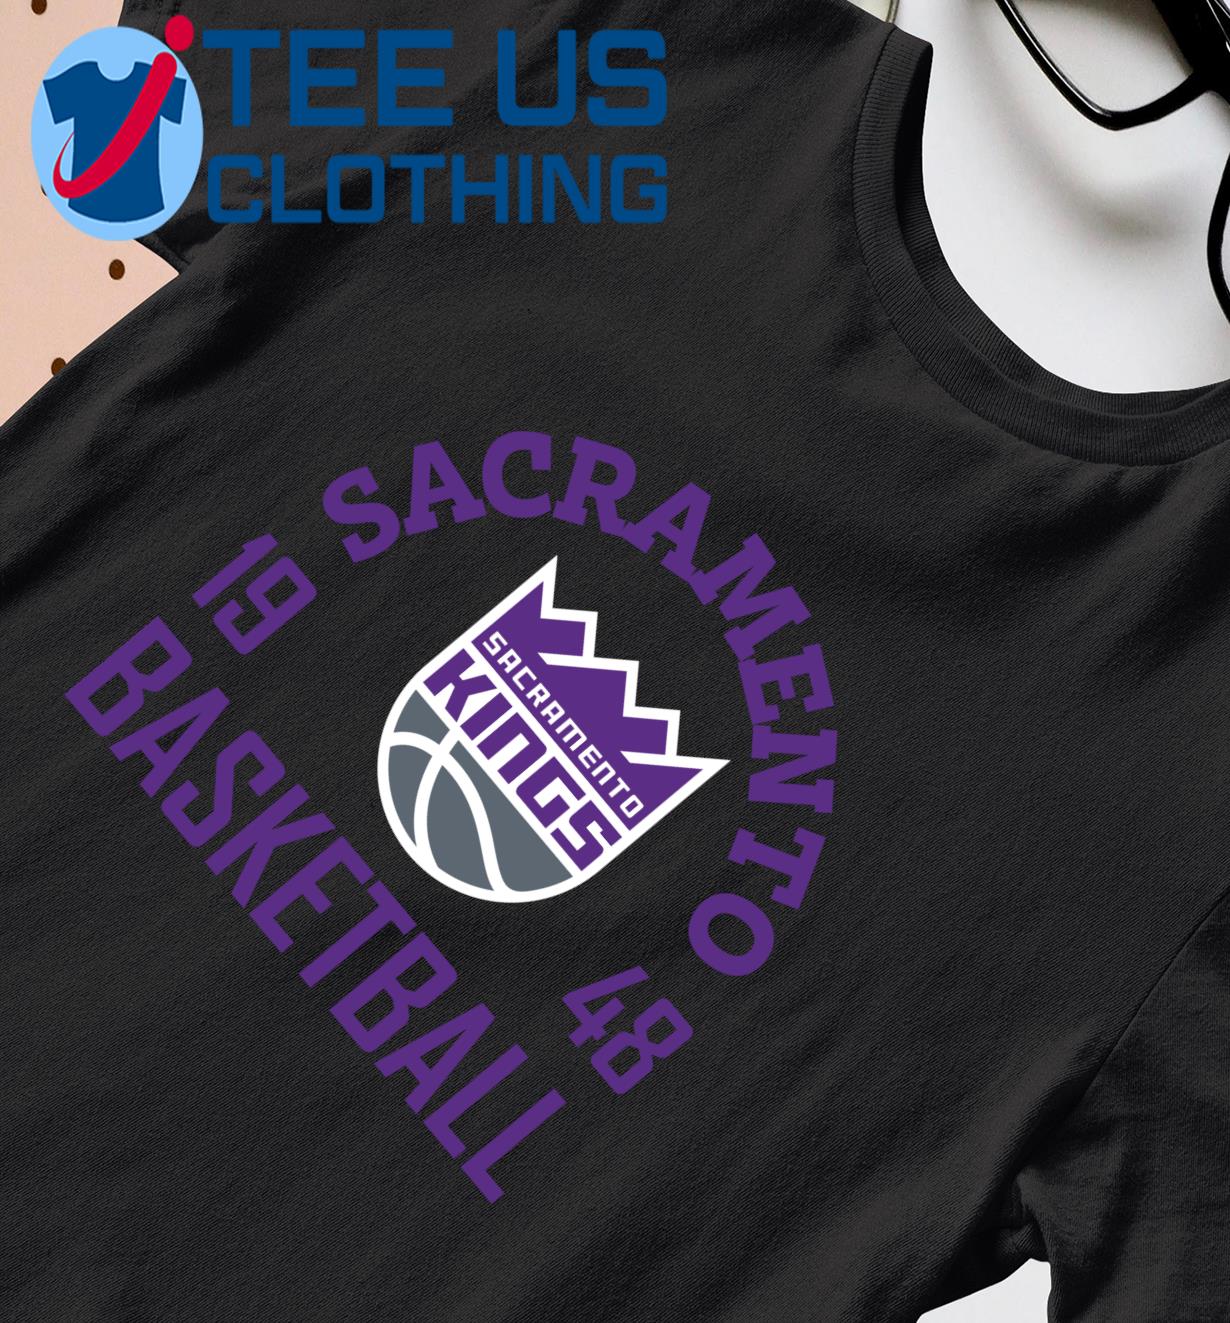 Sacramento Kings Basketball 1948 shirt